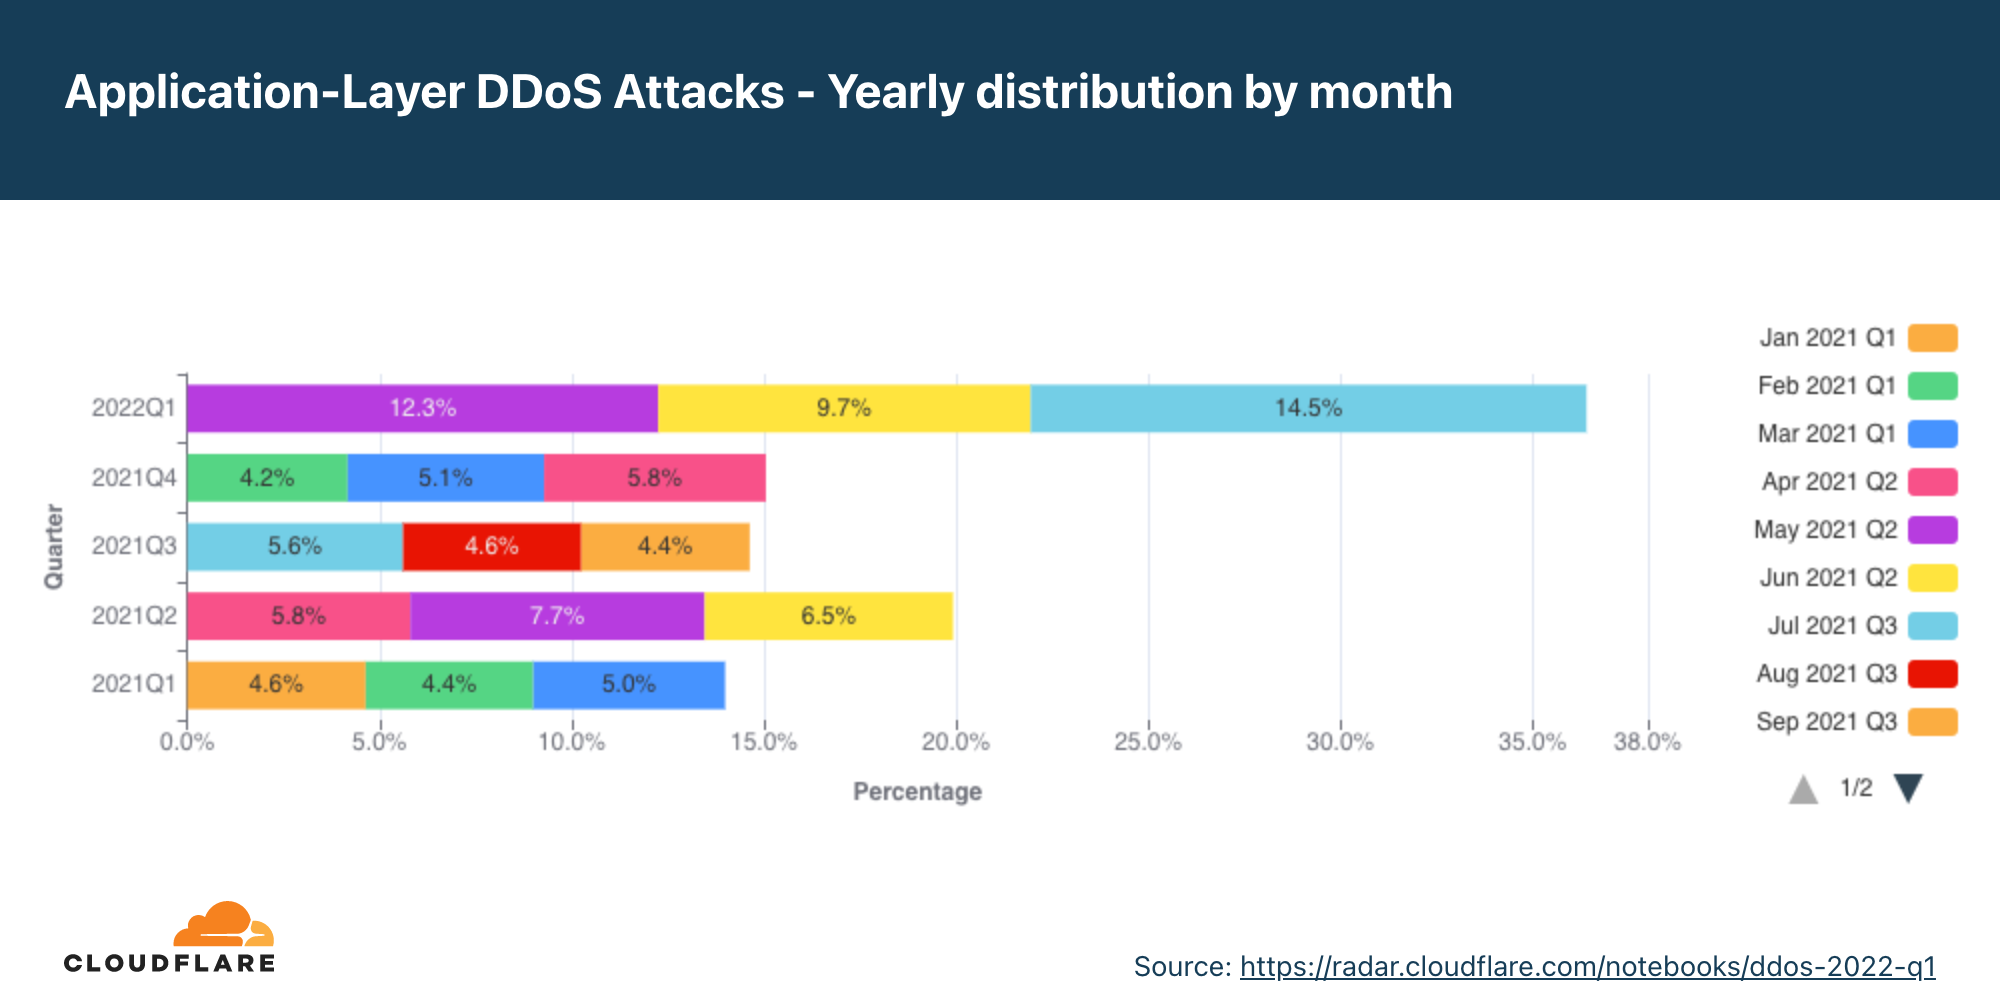 Gráfico da distribuição anual de ataques DDoS na camada de aplicativos por mês nos últimos 12 meses